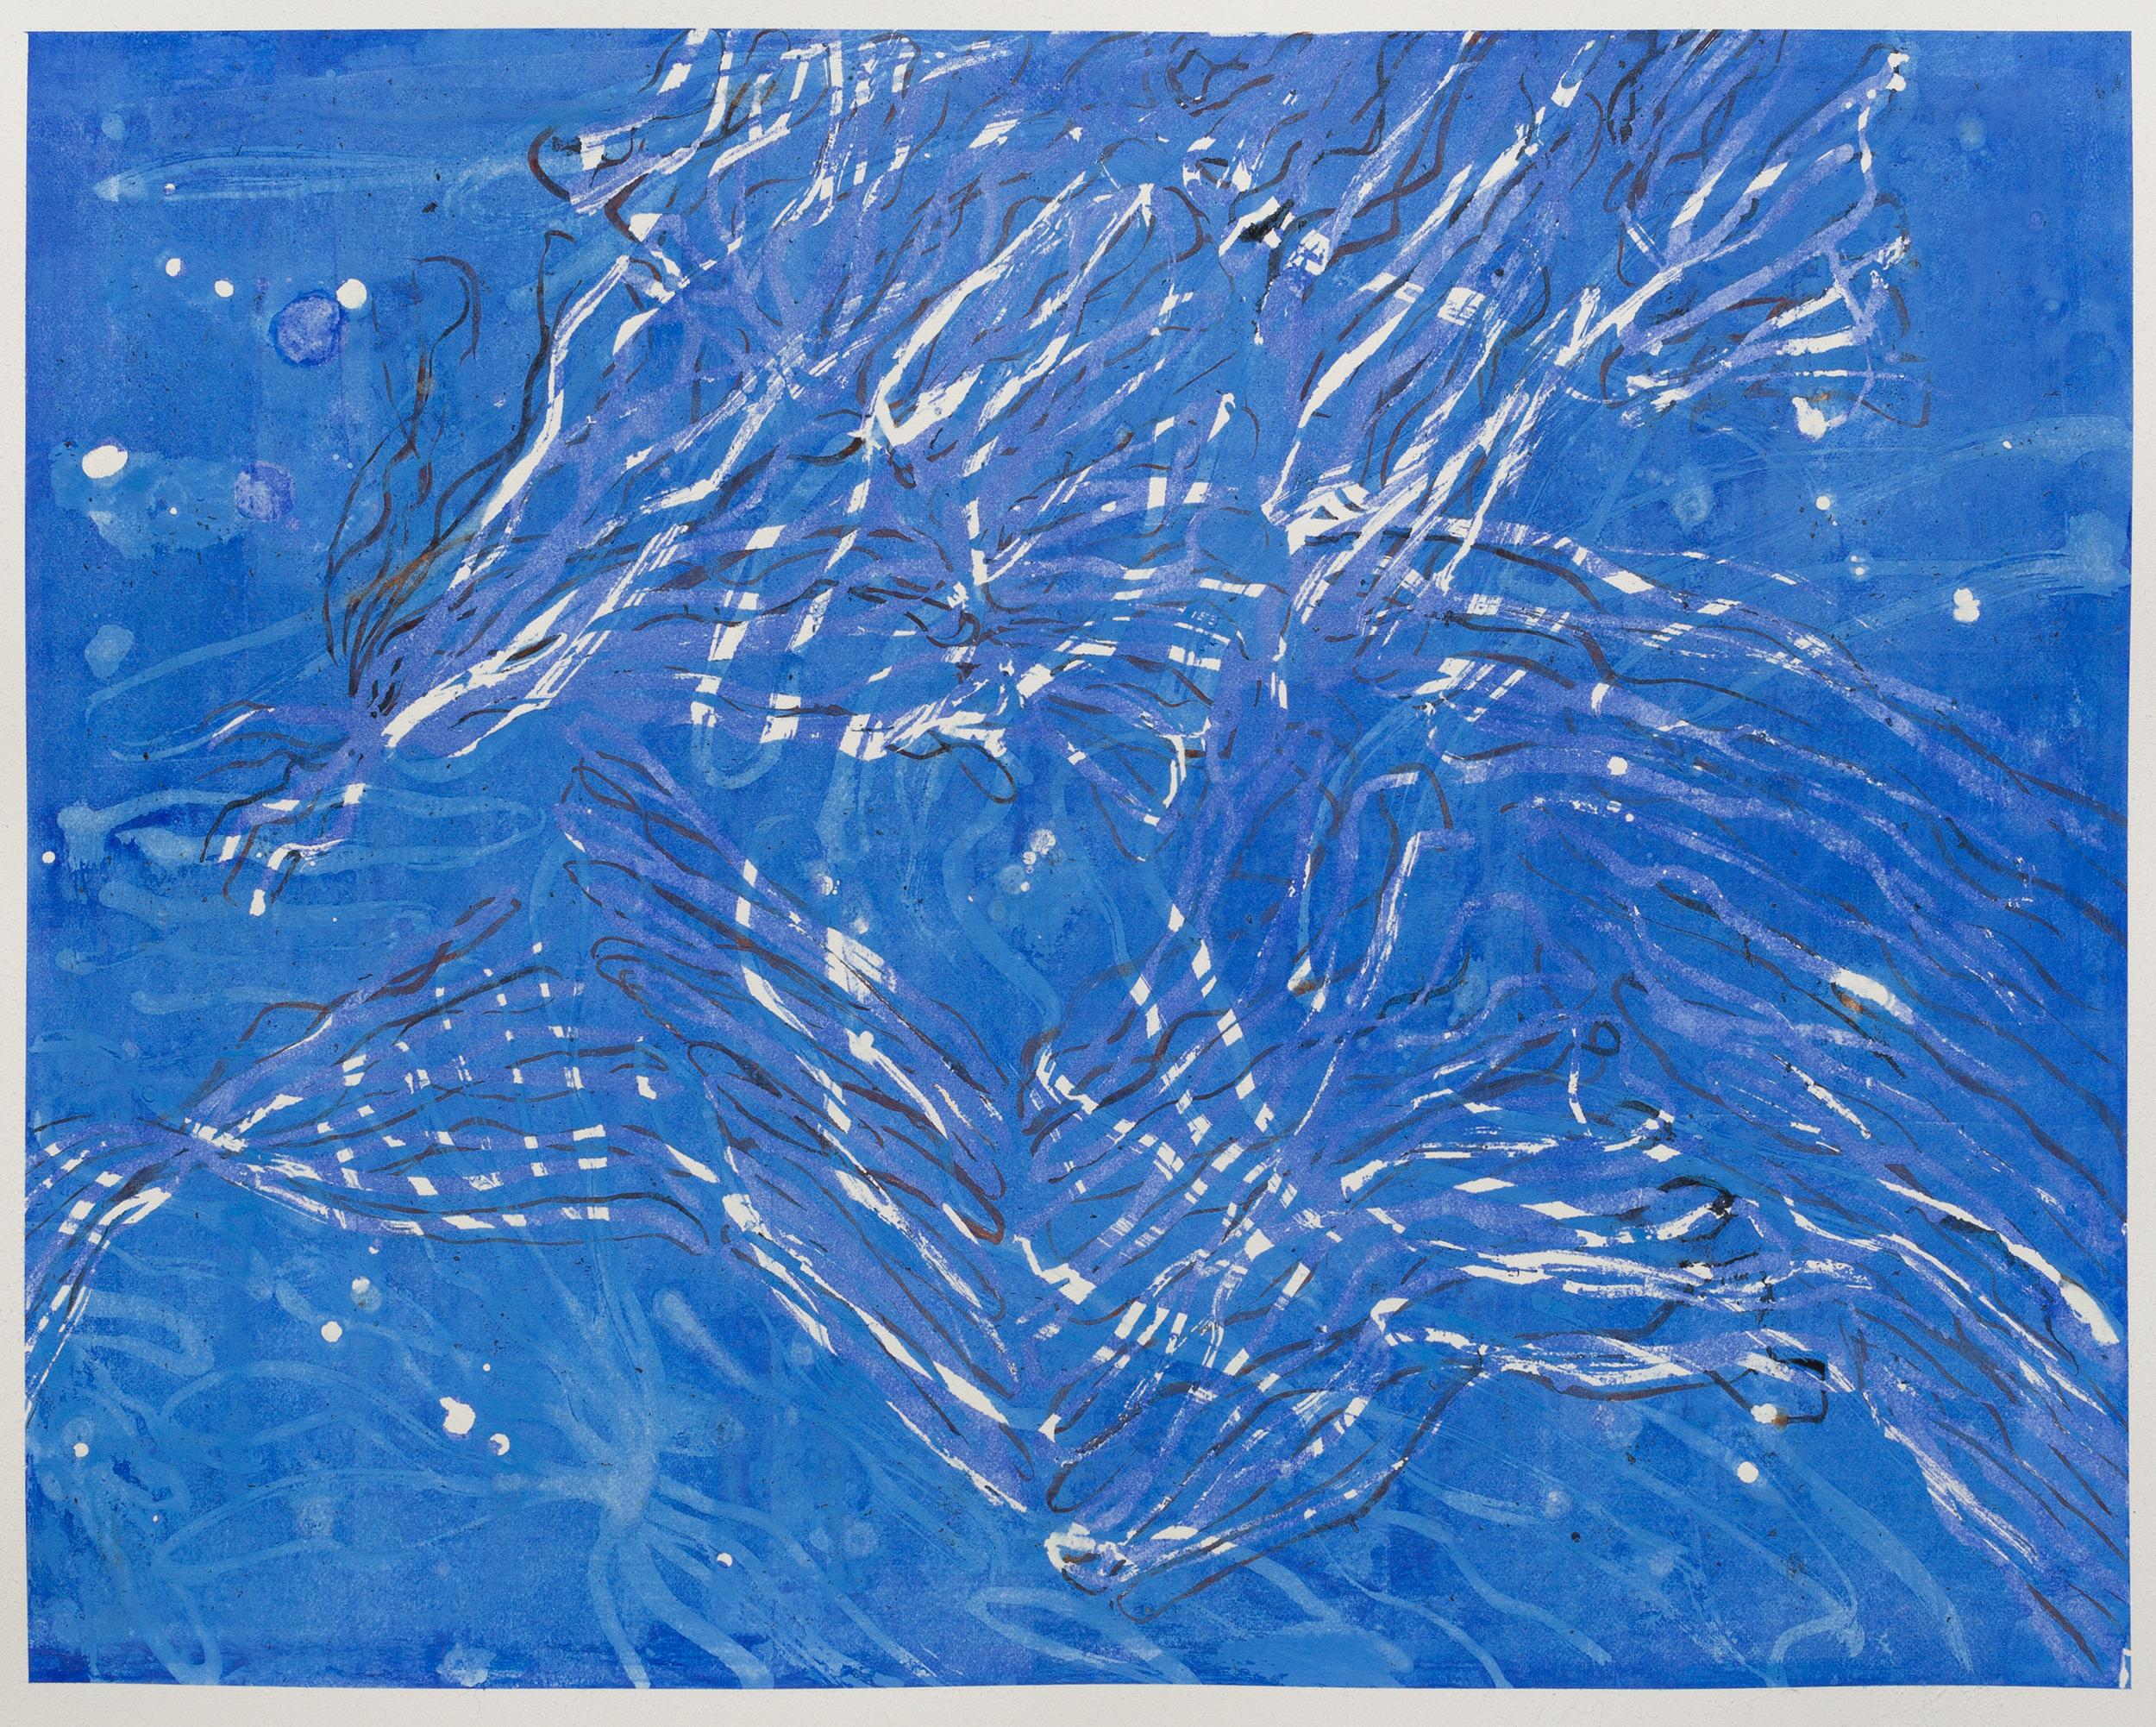 Current II – zeitgenössisches abstraktes blau-weißes gestisches Gemälde des Meereslebens